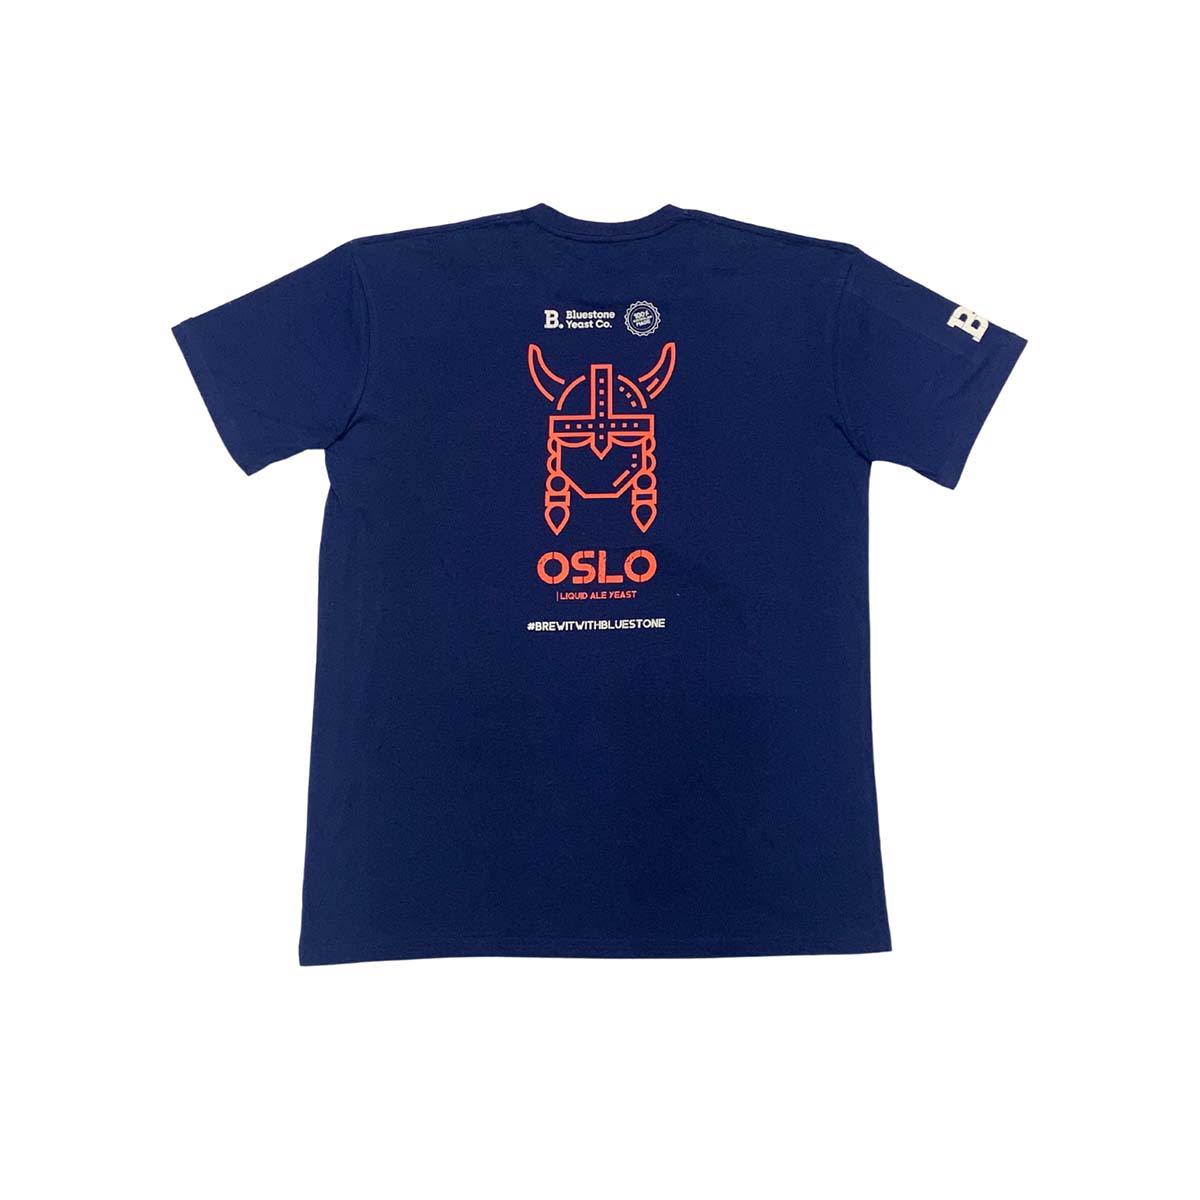 Oslo t-shirt in blue - Bluestone Yeast Co.